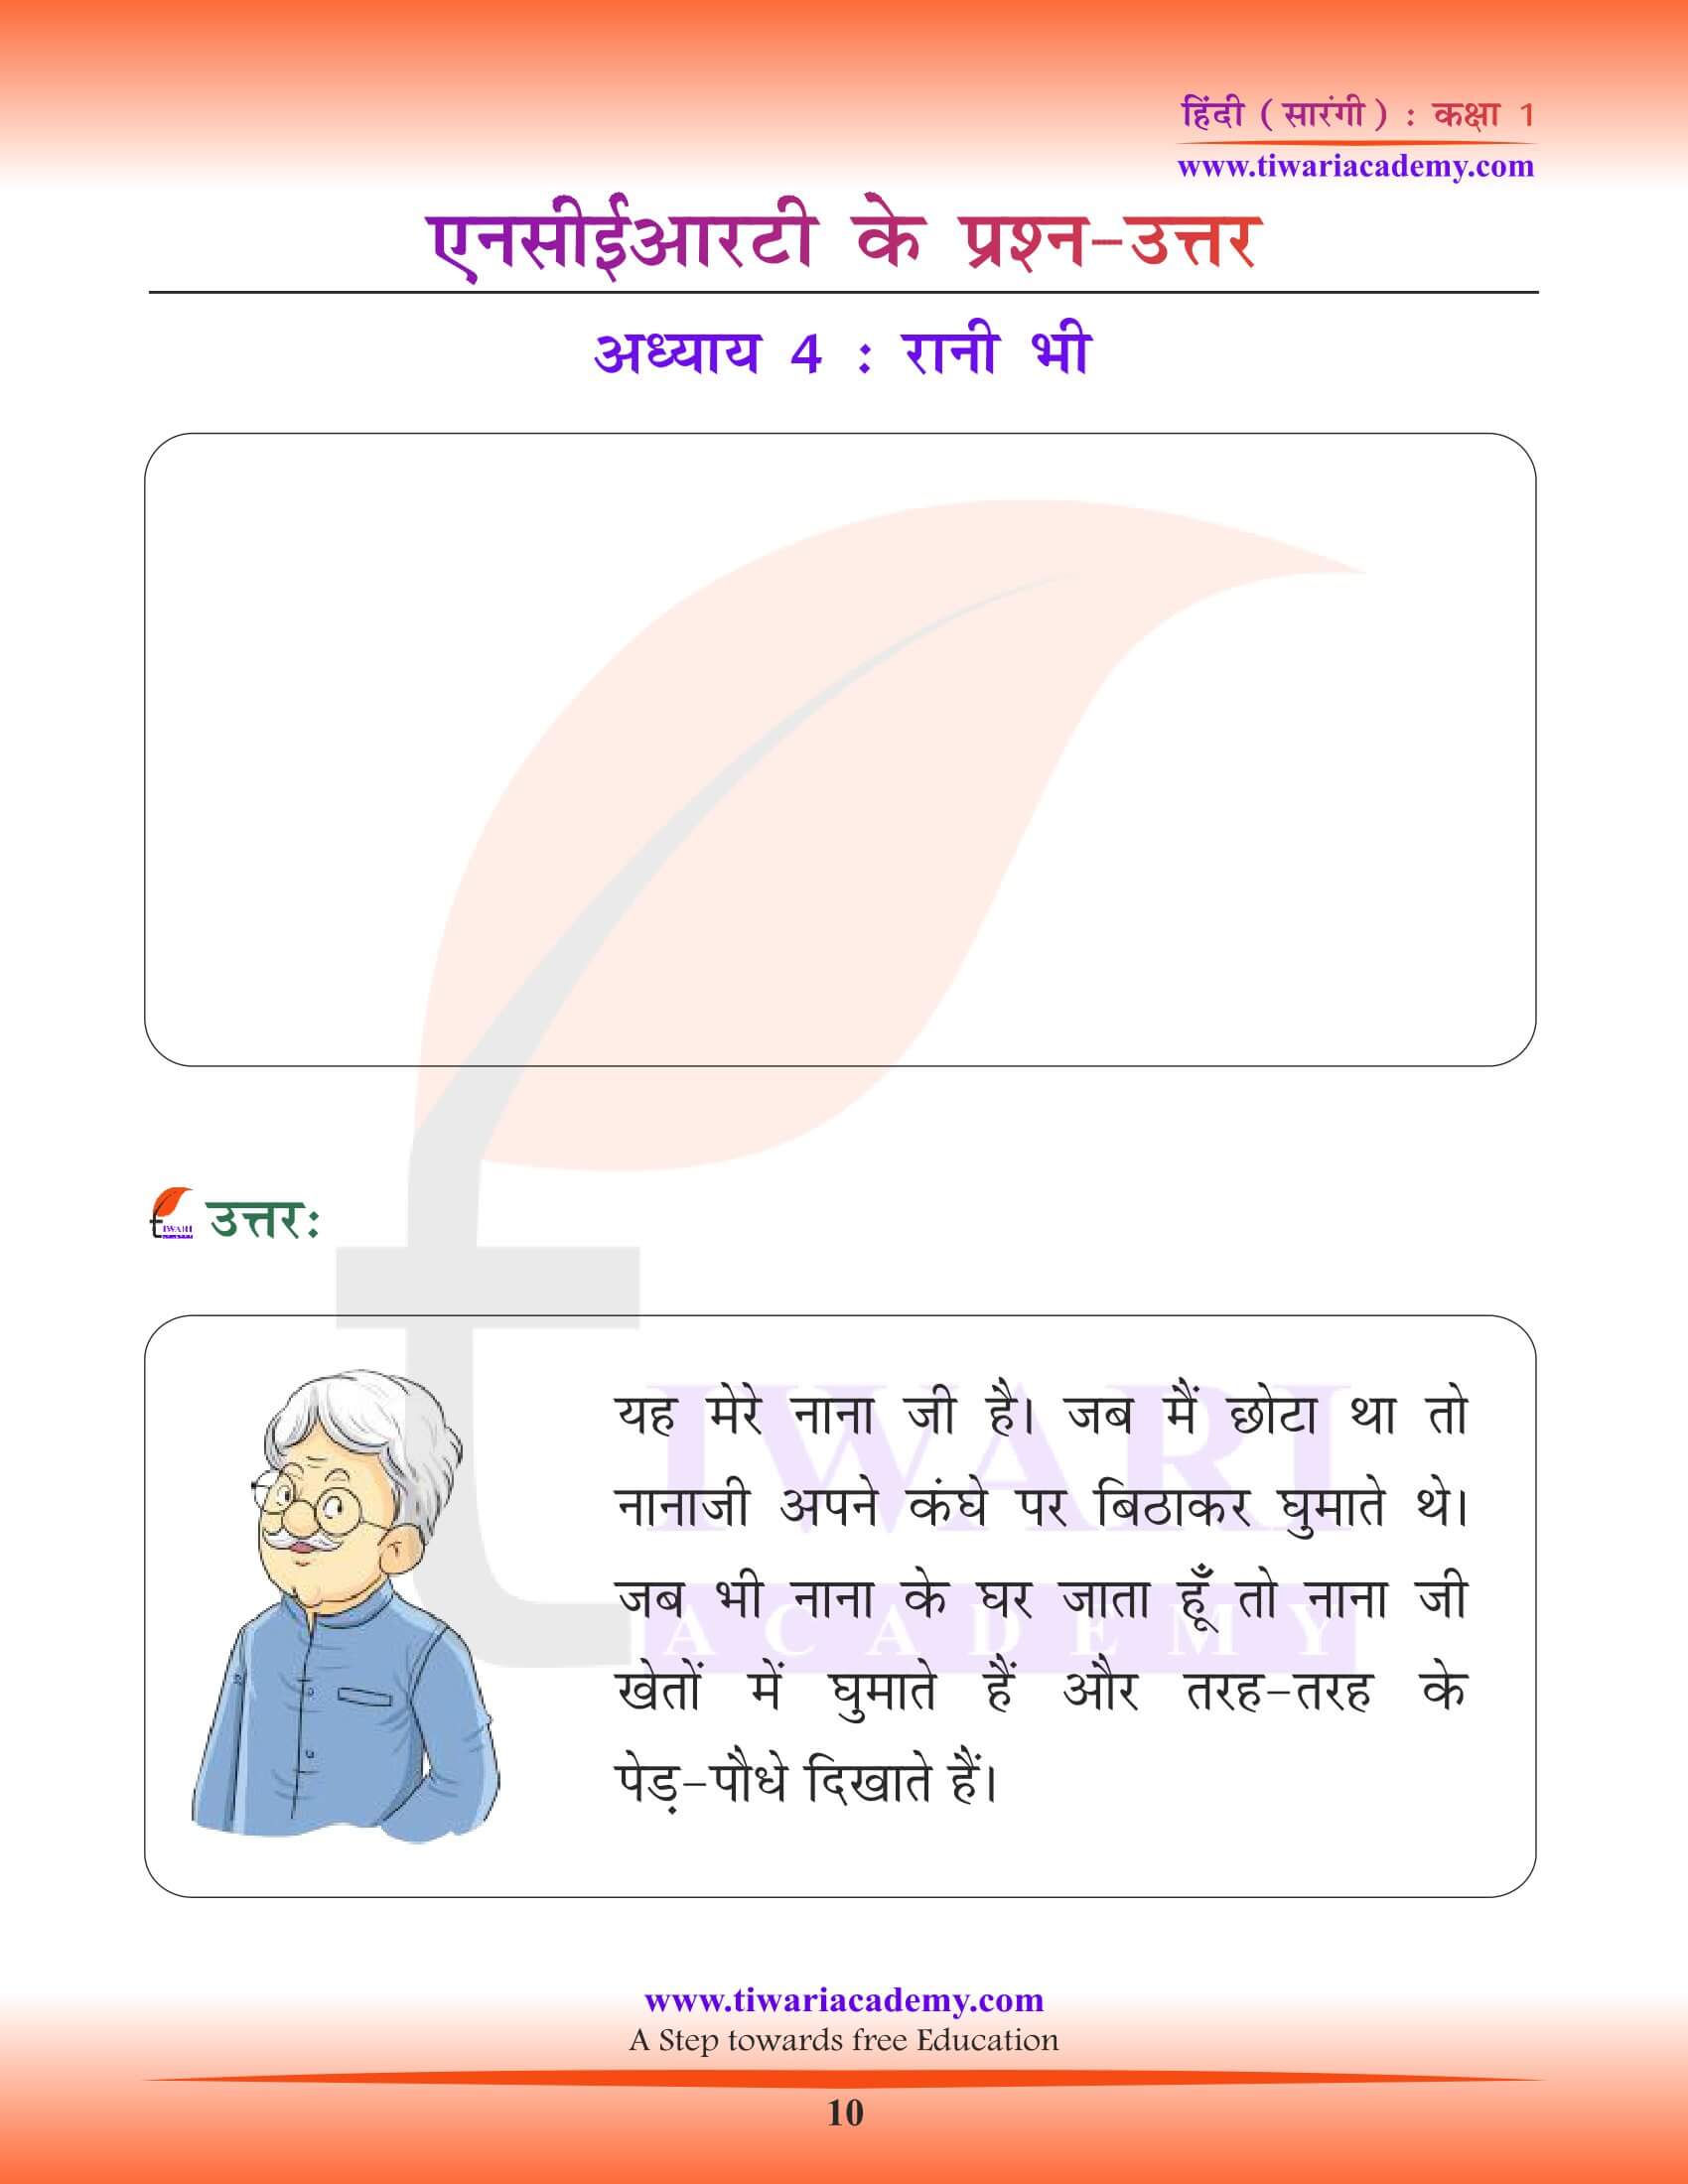 कक्षा 1 हिंदी सारंगी पाठ 4 के अभ्यास प्रश्न